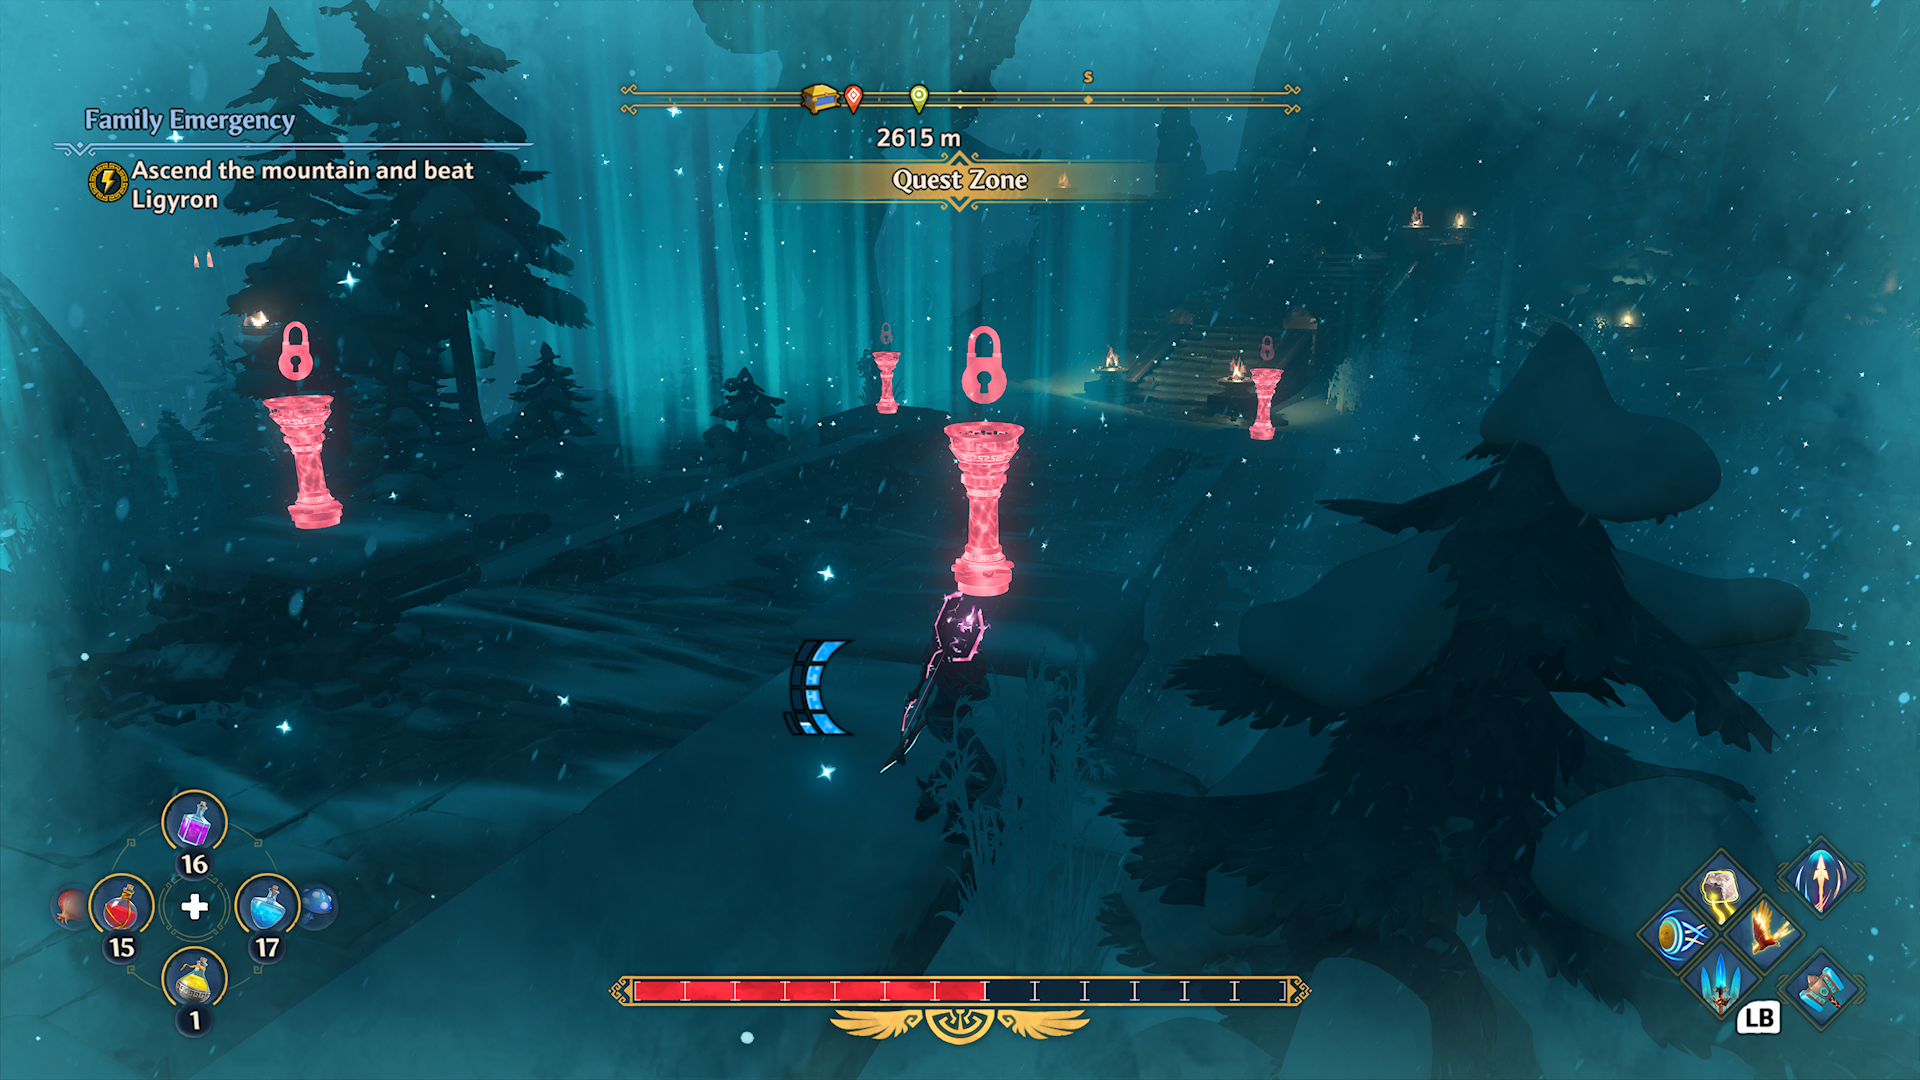 Fenyx Immortals Rising のスクリーンショット。4 つの明るい赤いシースルートーチが表示され、それぞれの上に明るい赤い鍵アイコンが表示されます。 雪に覆われた薄暗い風景の中で、赤い松明は周囲の濃い青とよく対照的です。